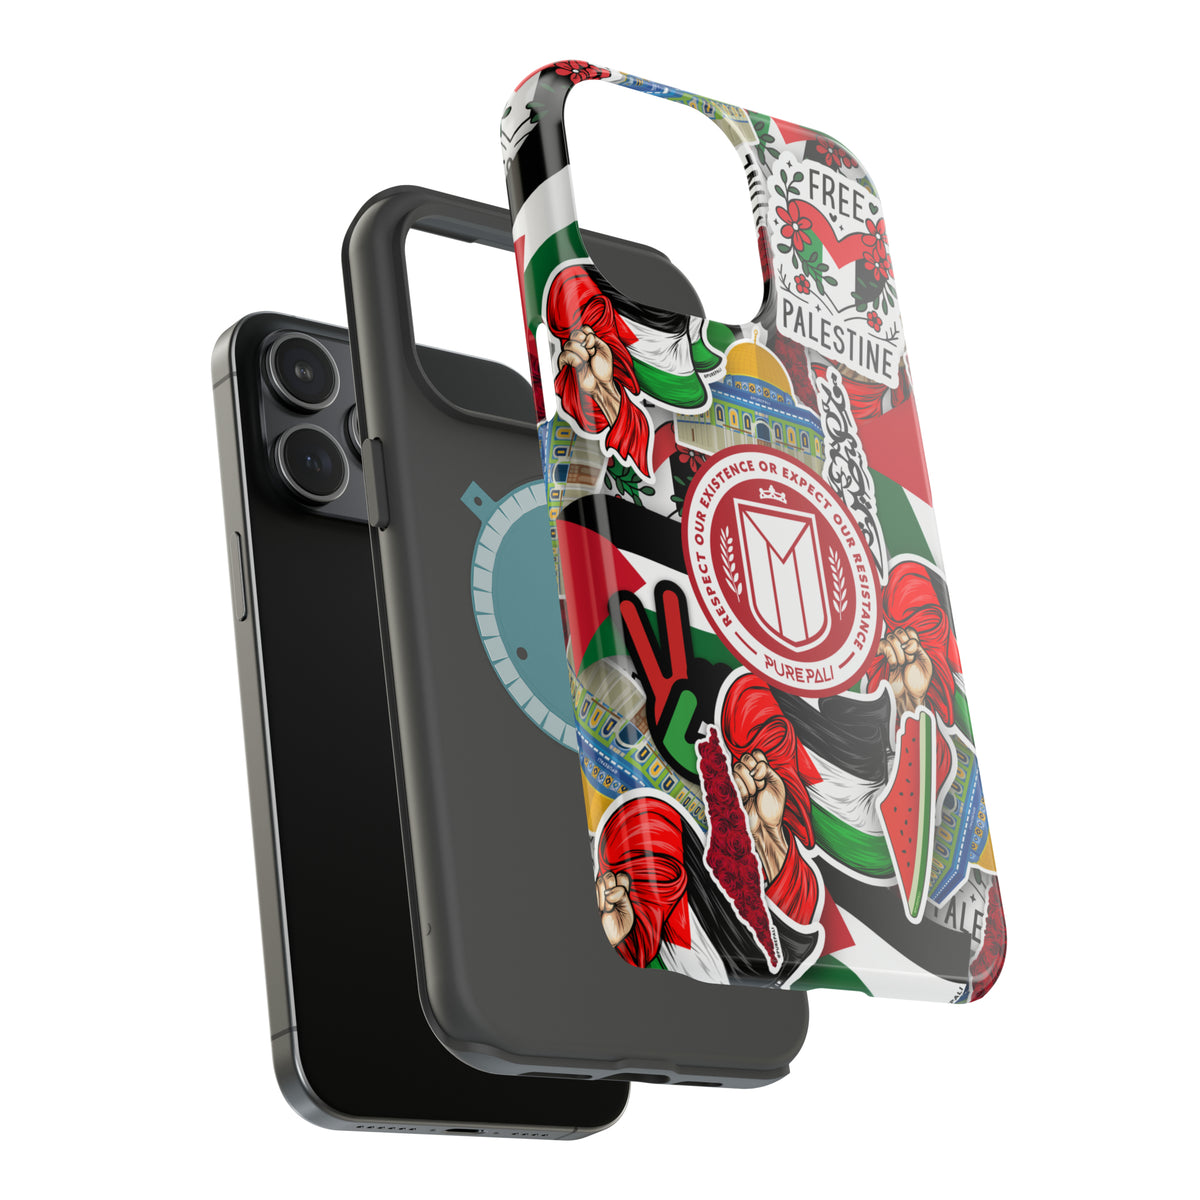 Sticker Montage Phone Case + MagSafe - PurePali